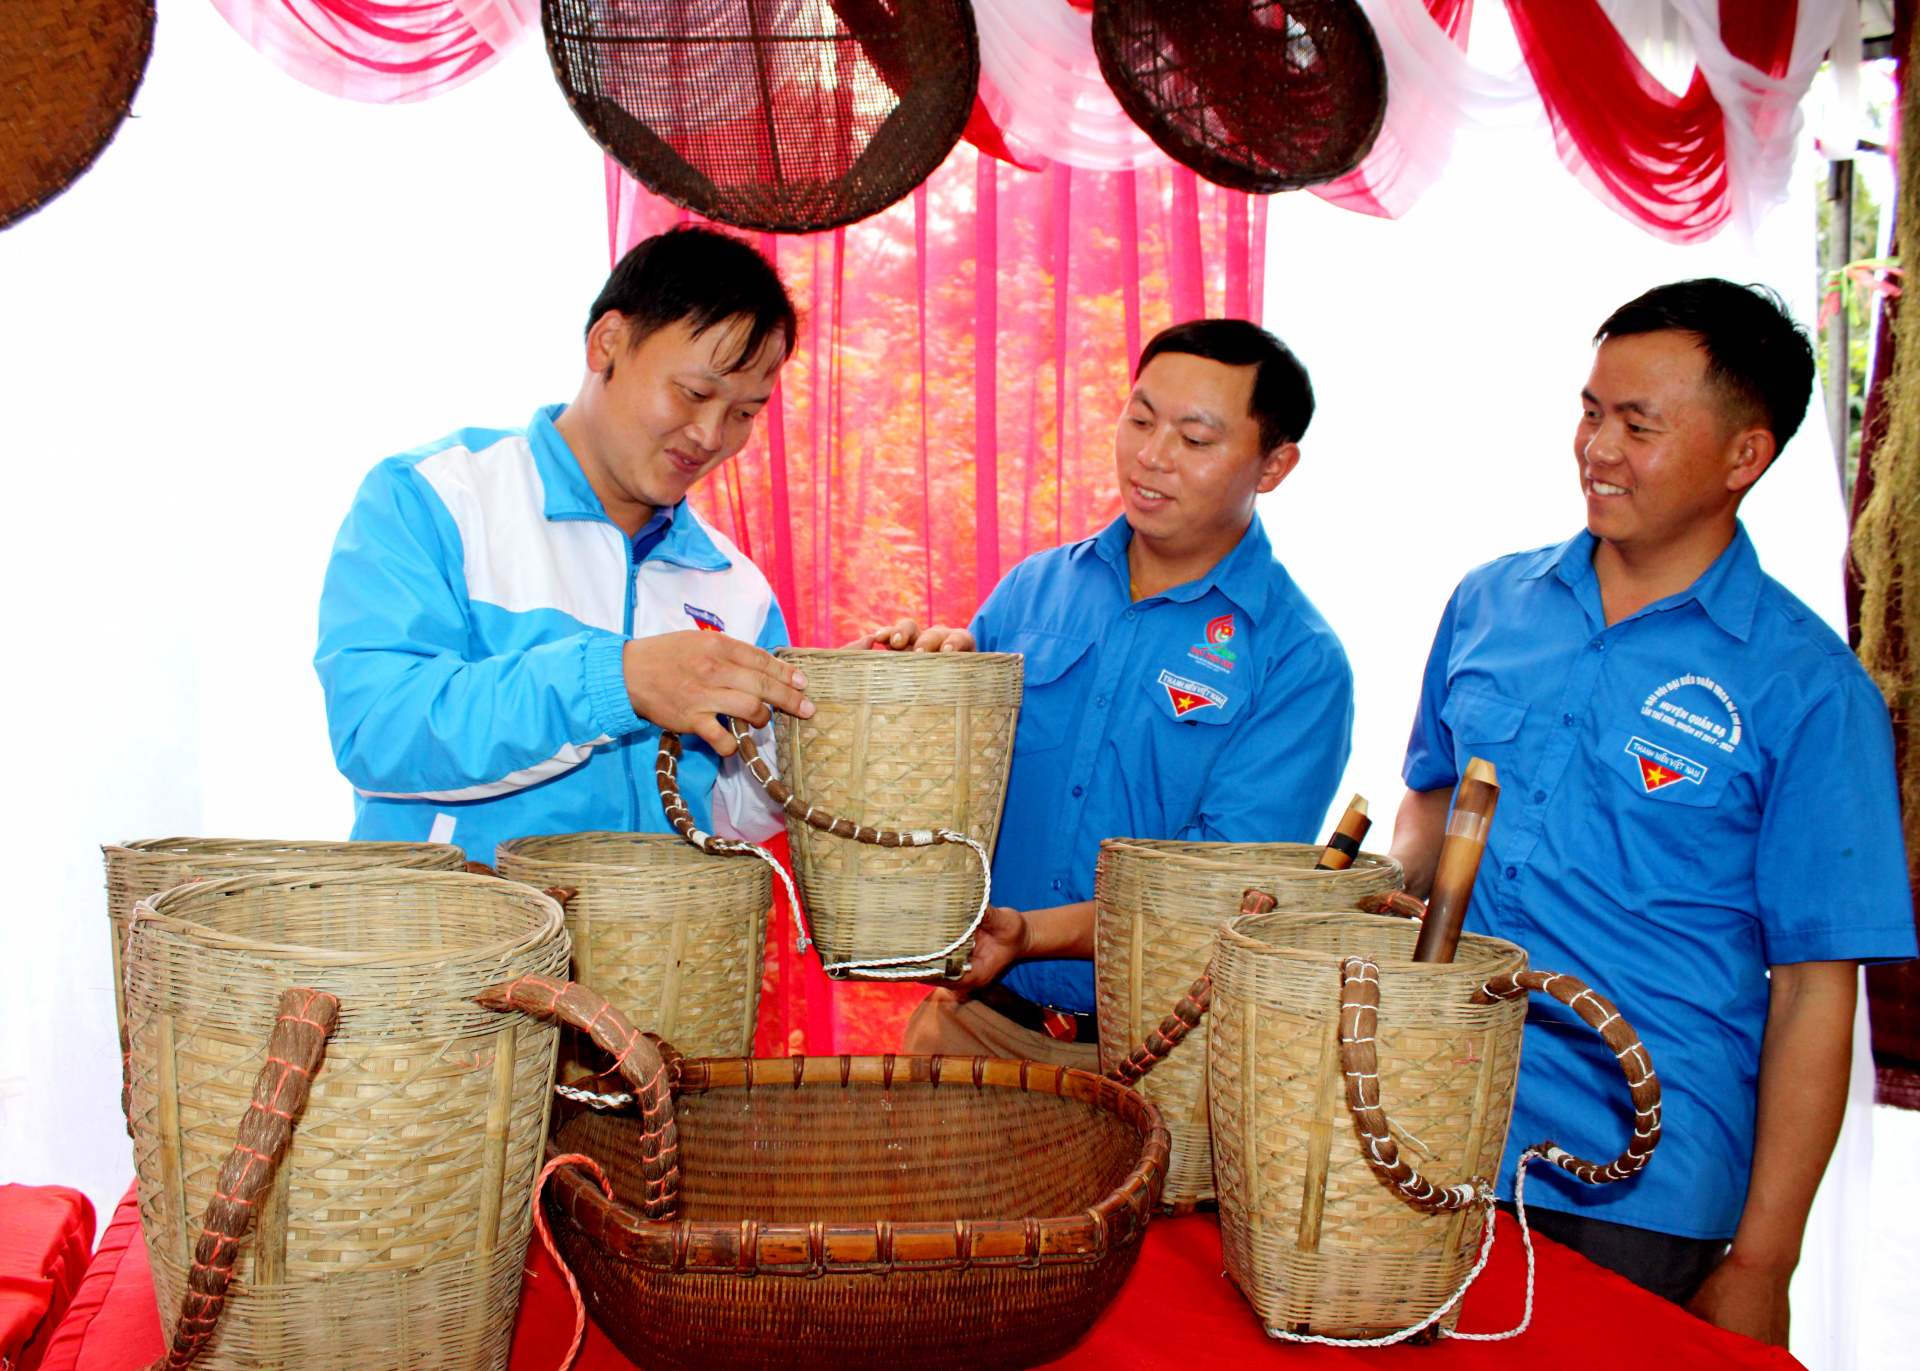 Sản phẩm đan lát được đoàn viên, thanh niên xã trưng bày tại các sự kiện lễ hội của huyện